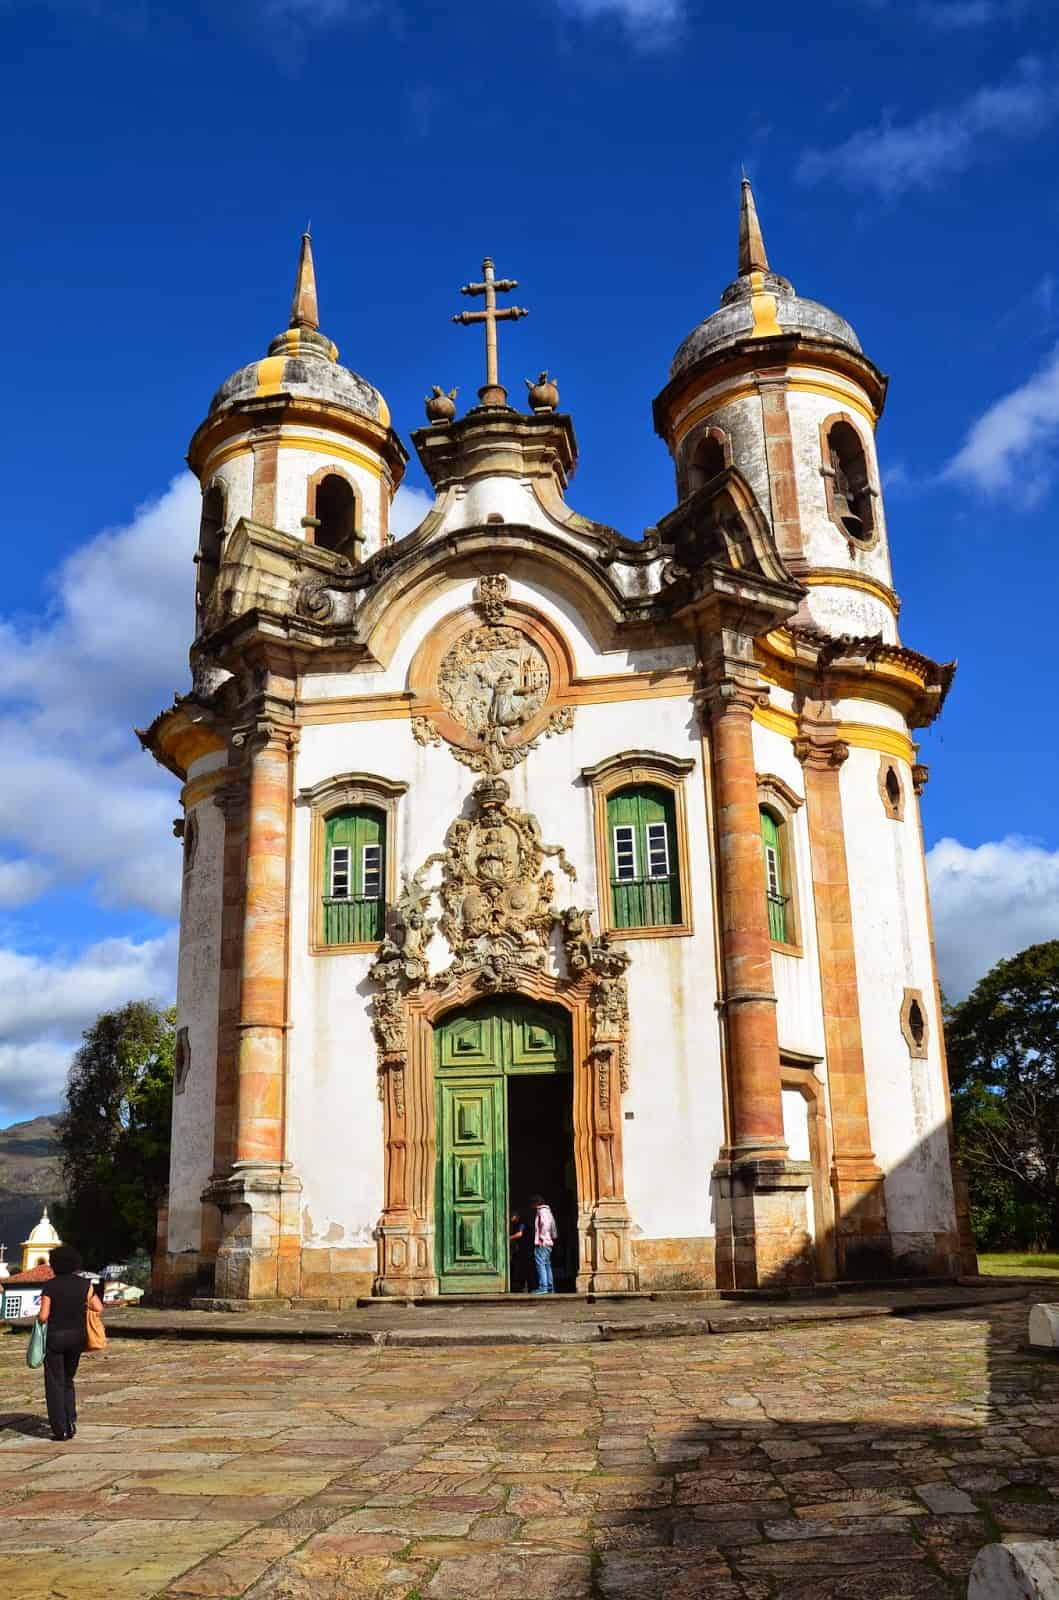 São Francisco de Assis in Ouro Preto, Brazil